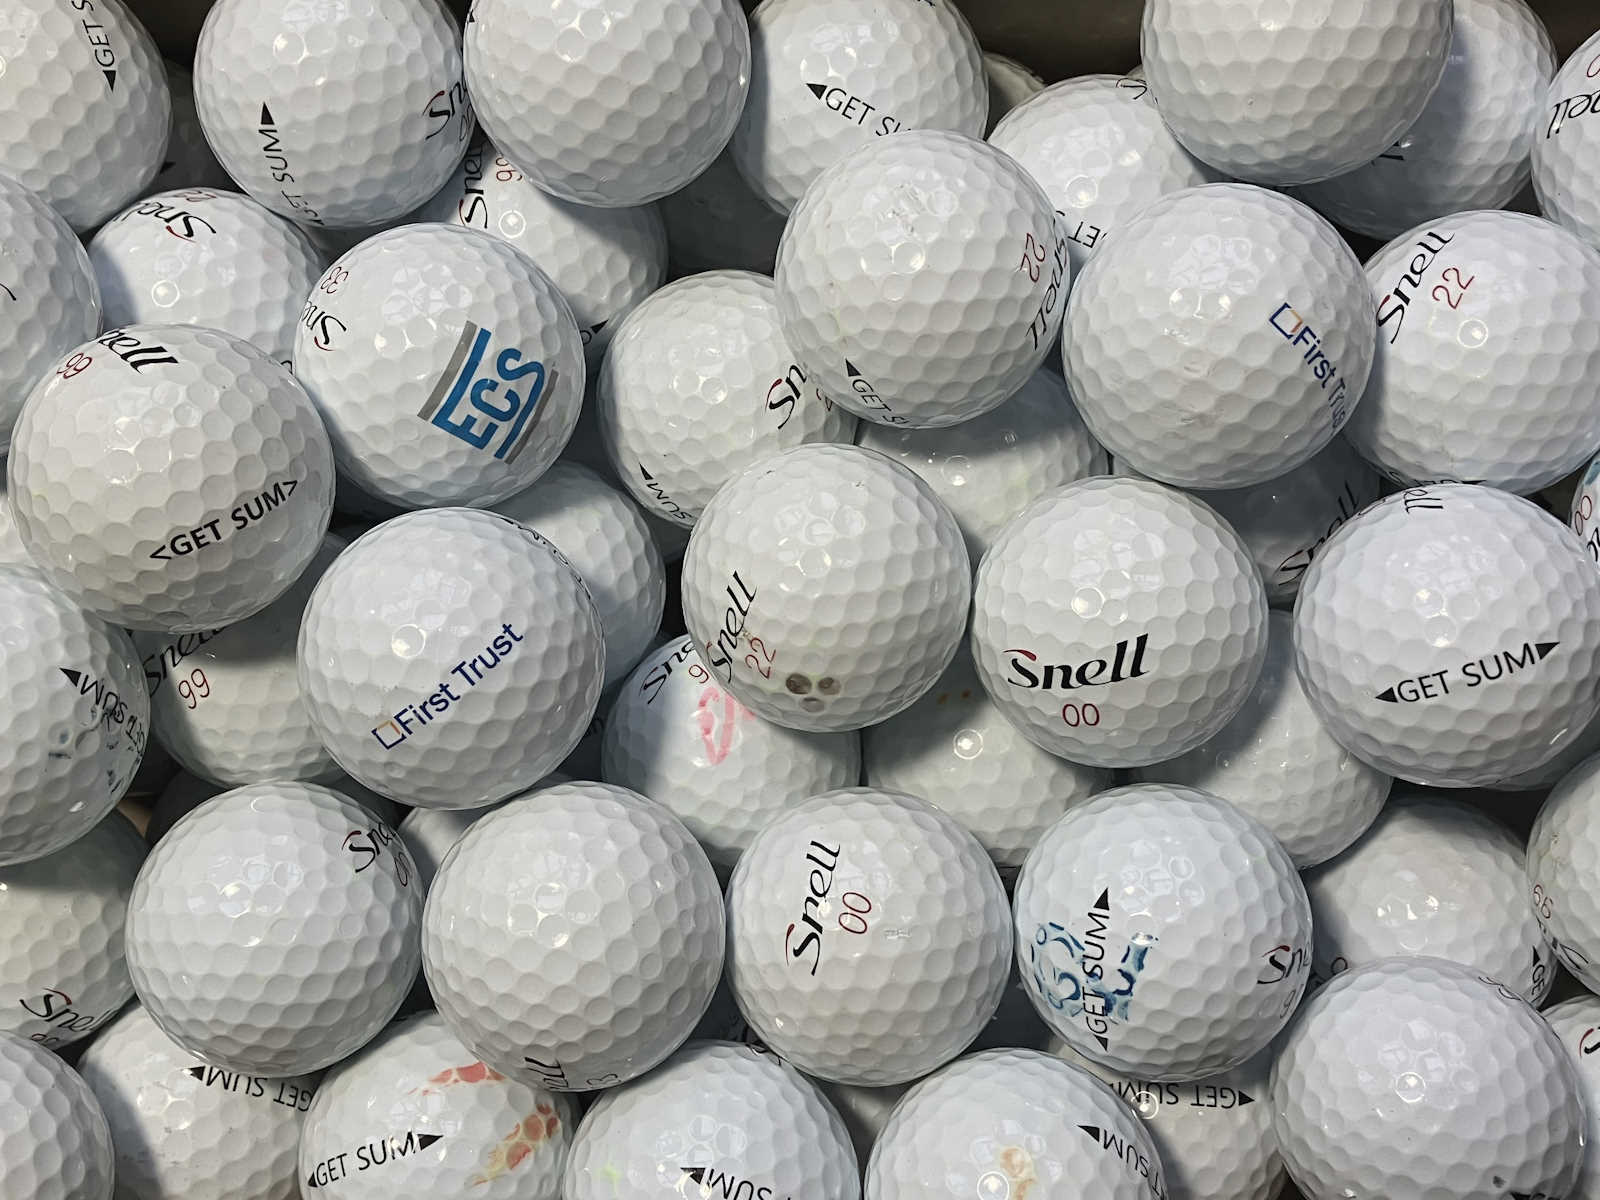 Snell Get Sum Lakeballs - gebrauchte Get Sum Golfbälle AA/AAA-Qualität